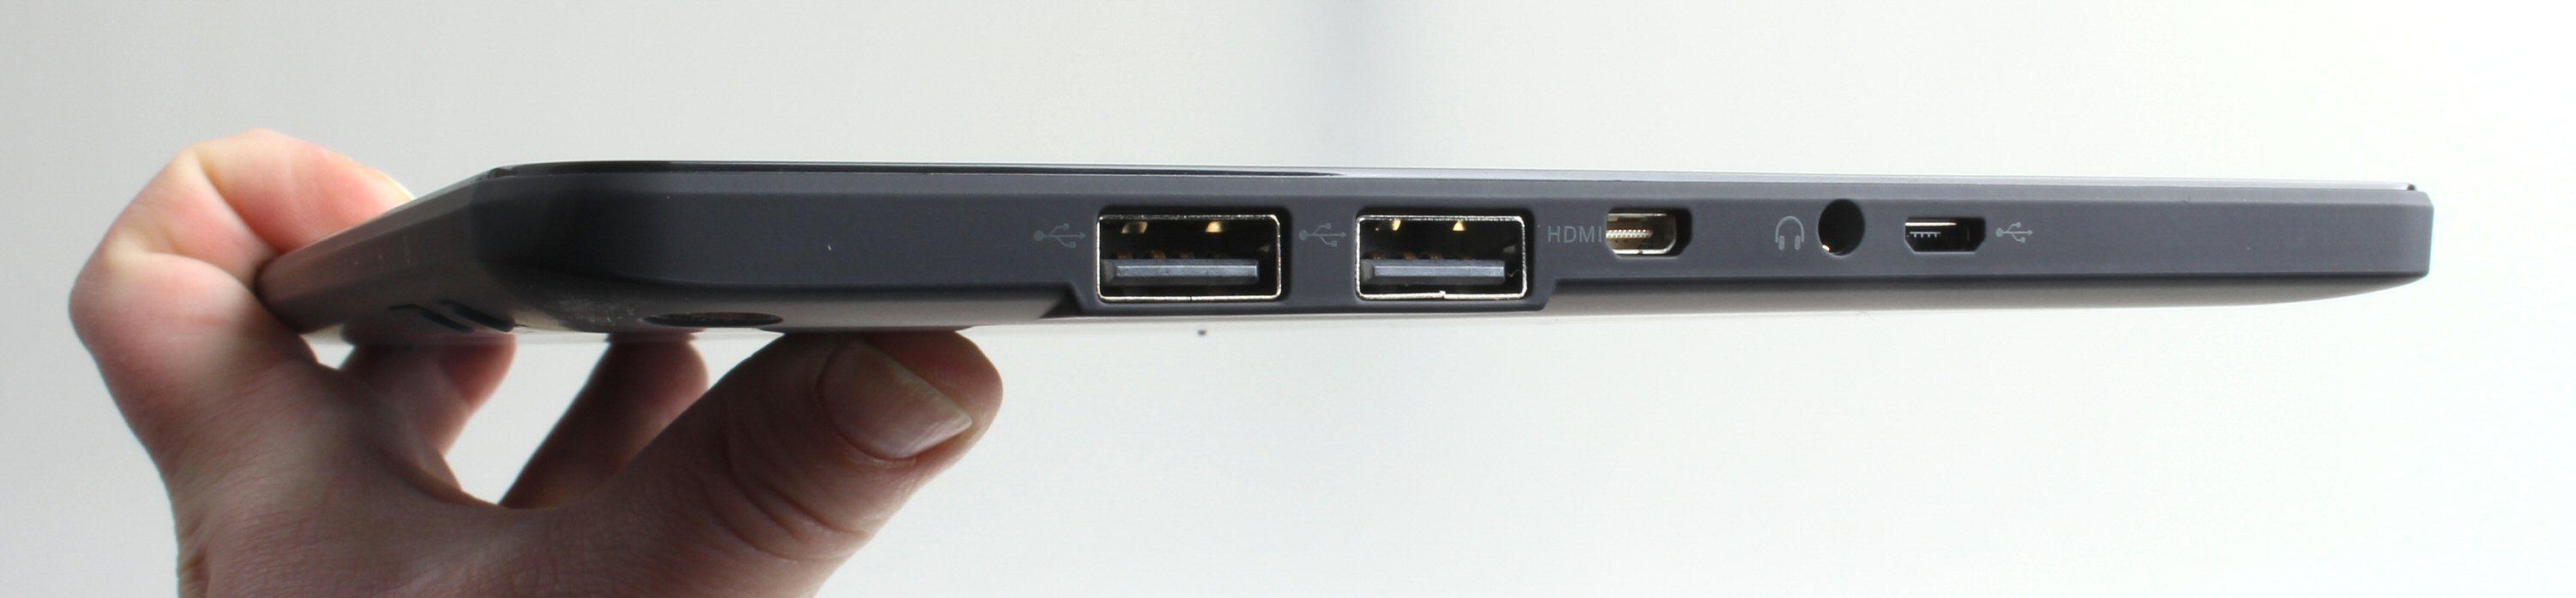 Vanlige USB-kontakter på brettdelen er det sjelden vi ser. Foto: Vegar Jansen, Tek.no